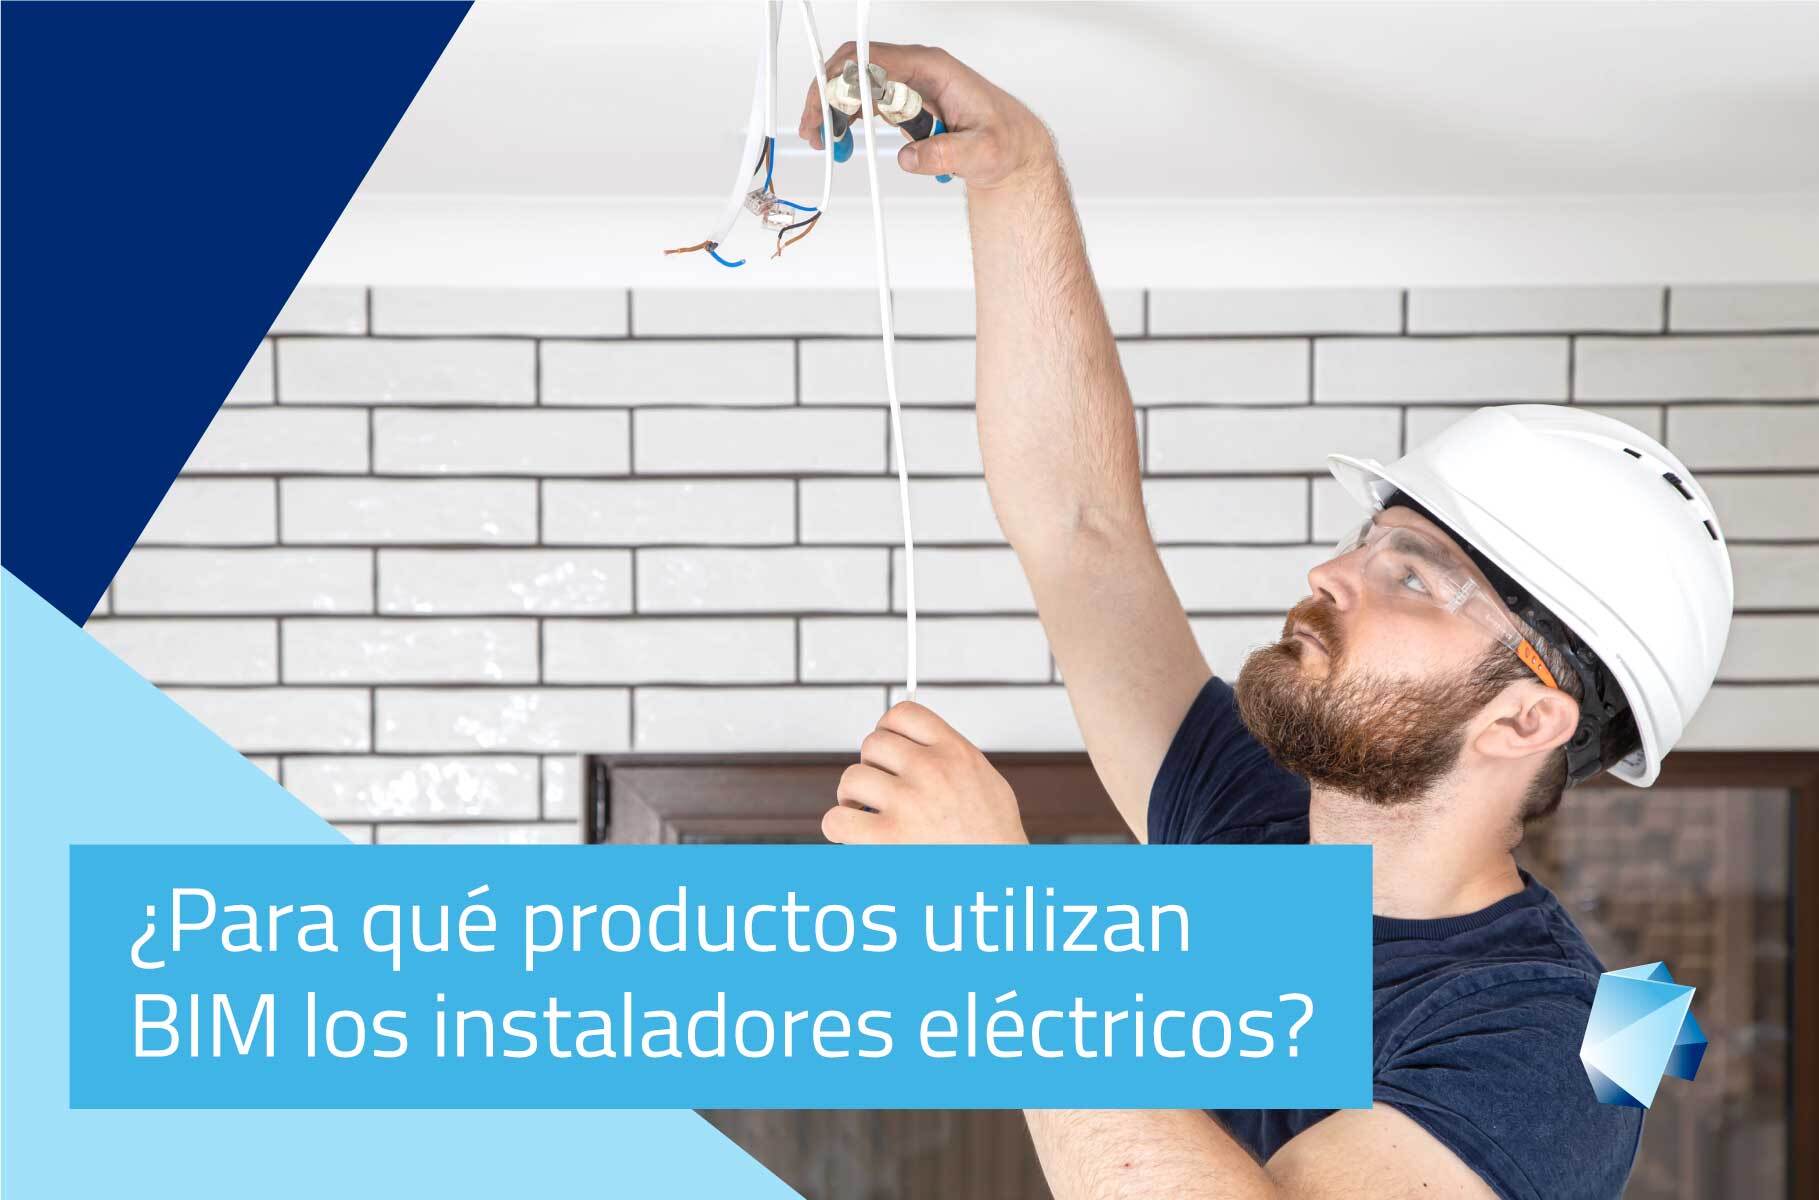 ¿Para qué productos utilizan BIM los instaladores eléctricos?